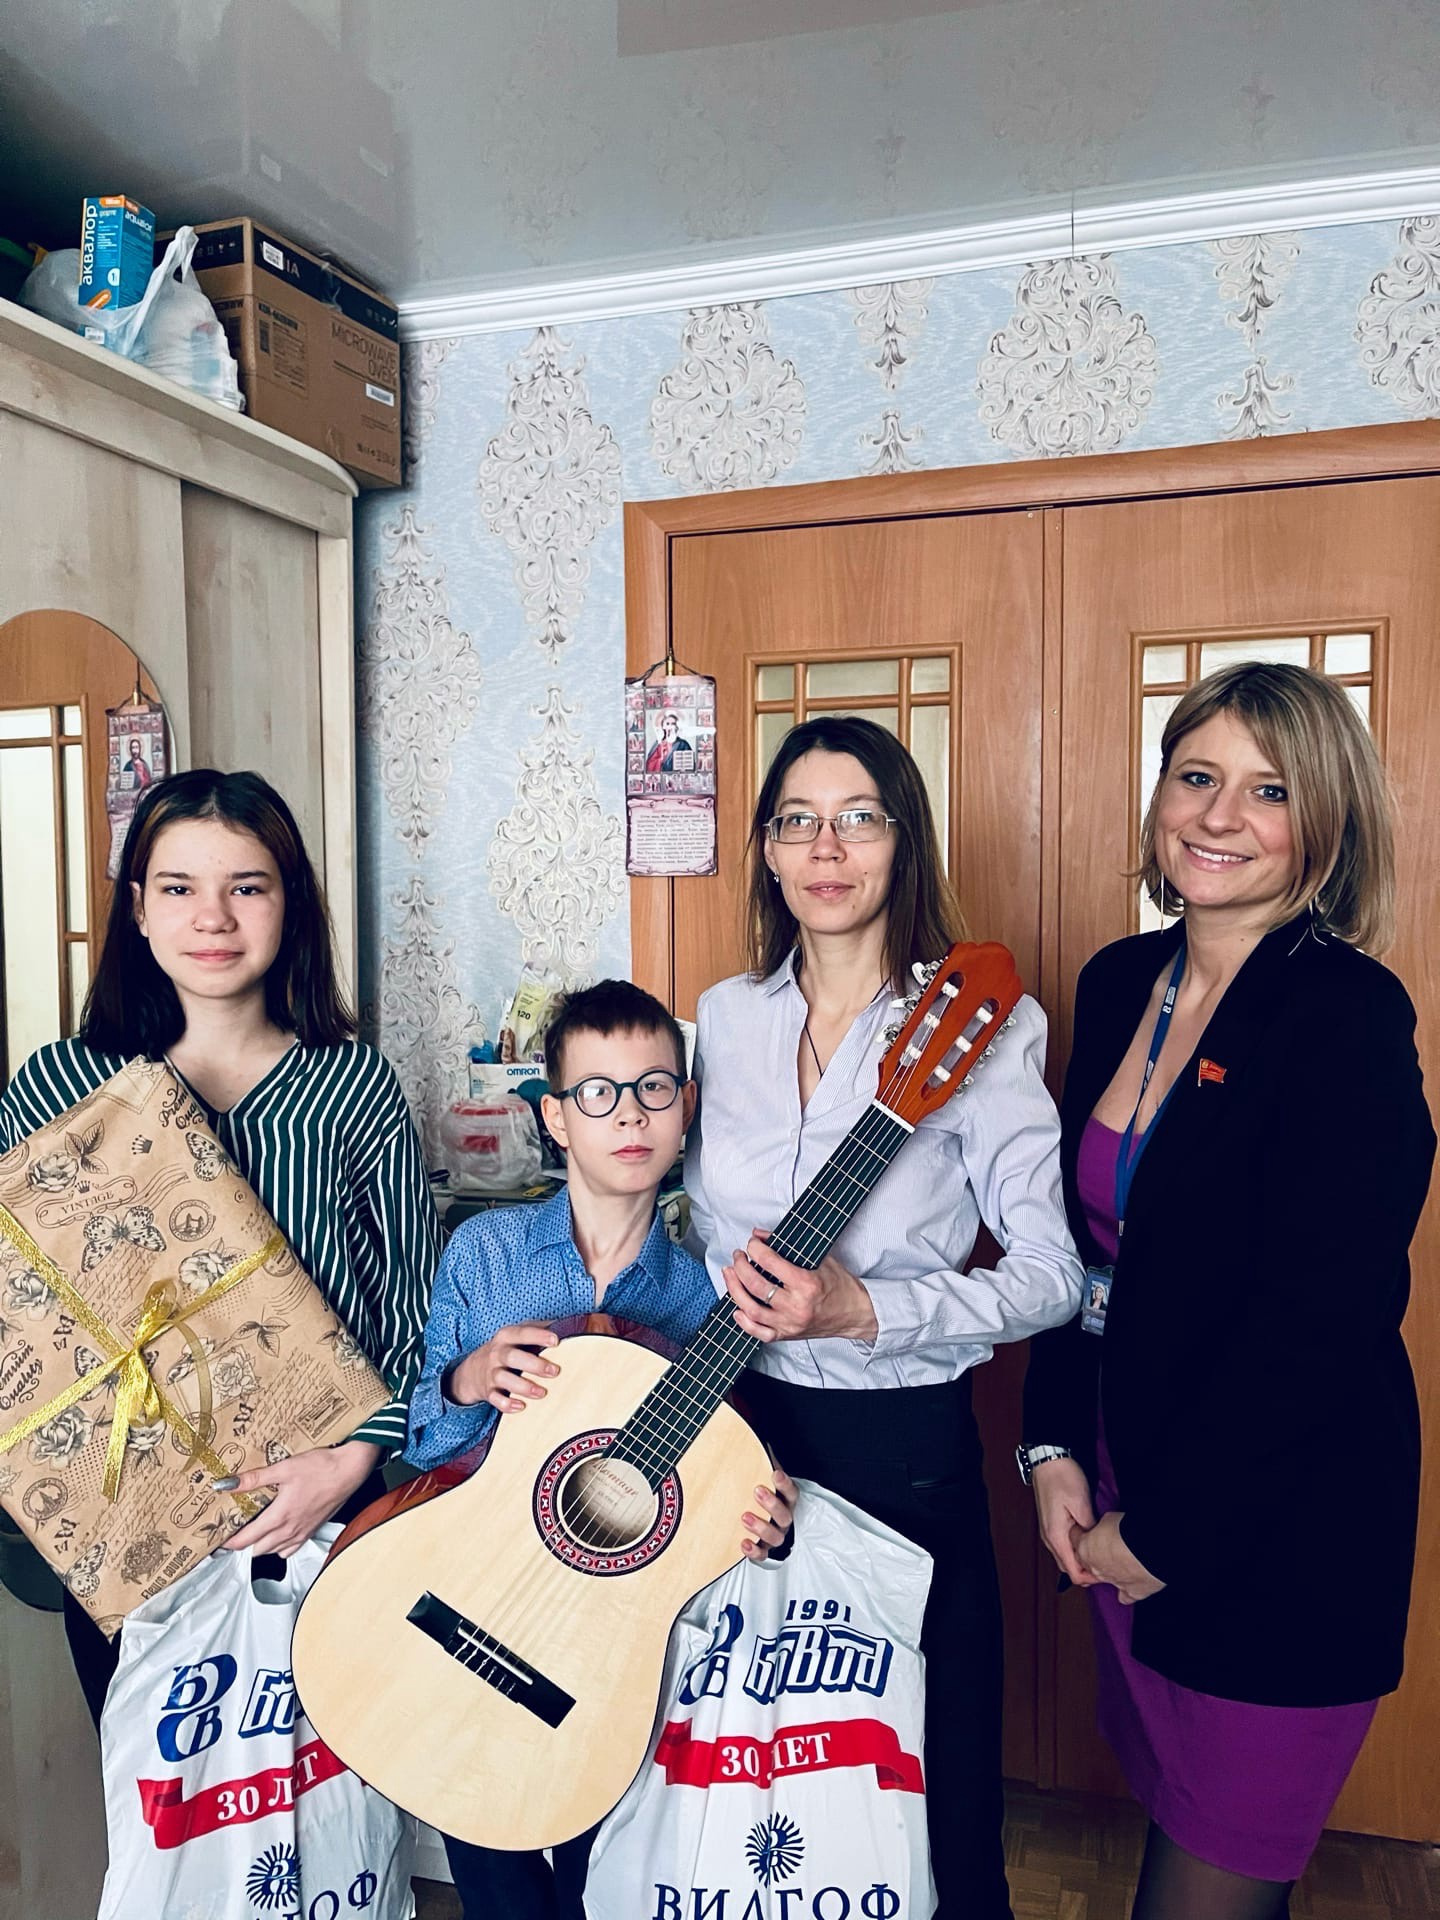 Витя Елецкий с нового года сможет учиться игре на гитаре. Инструмент подарила школьнику группа компаний «БОВИД»